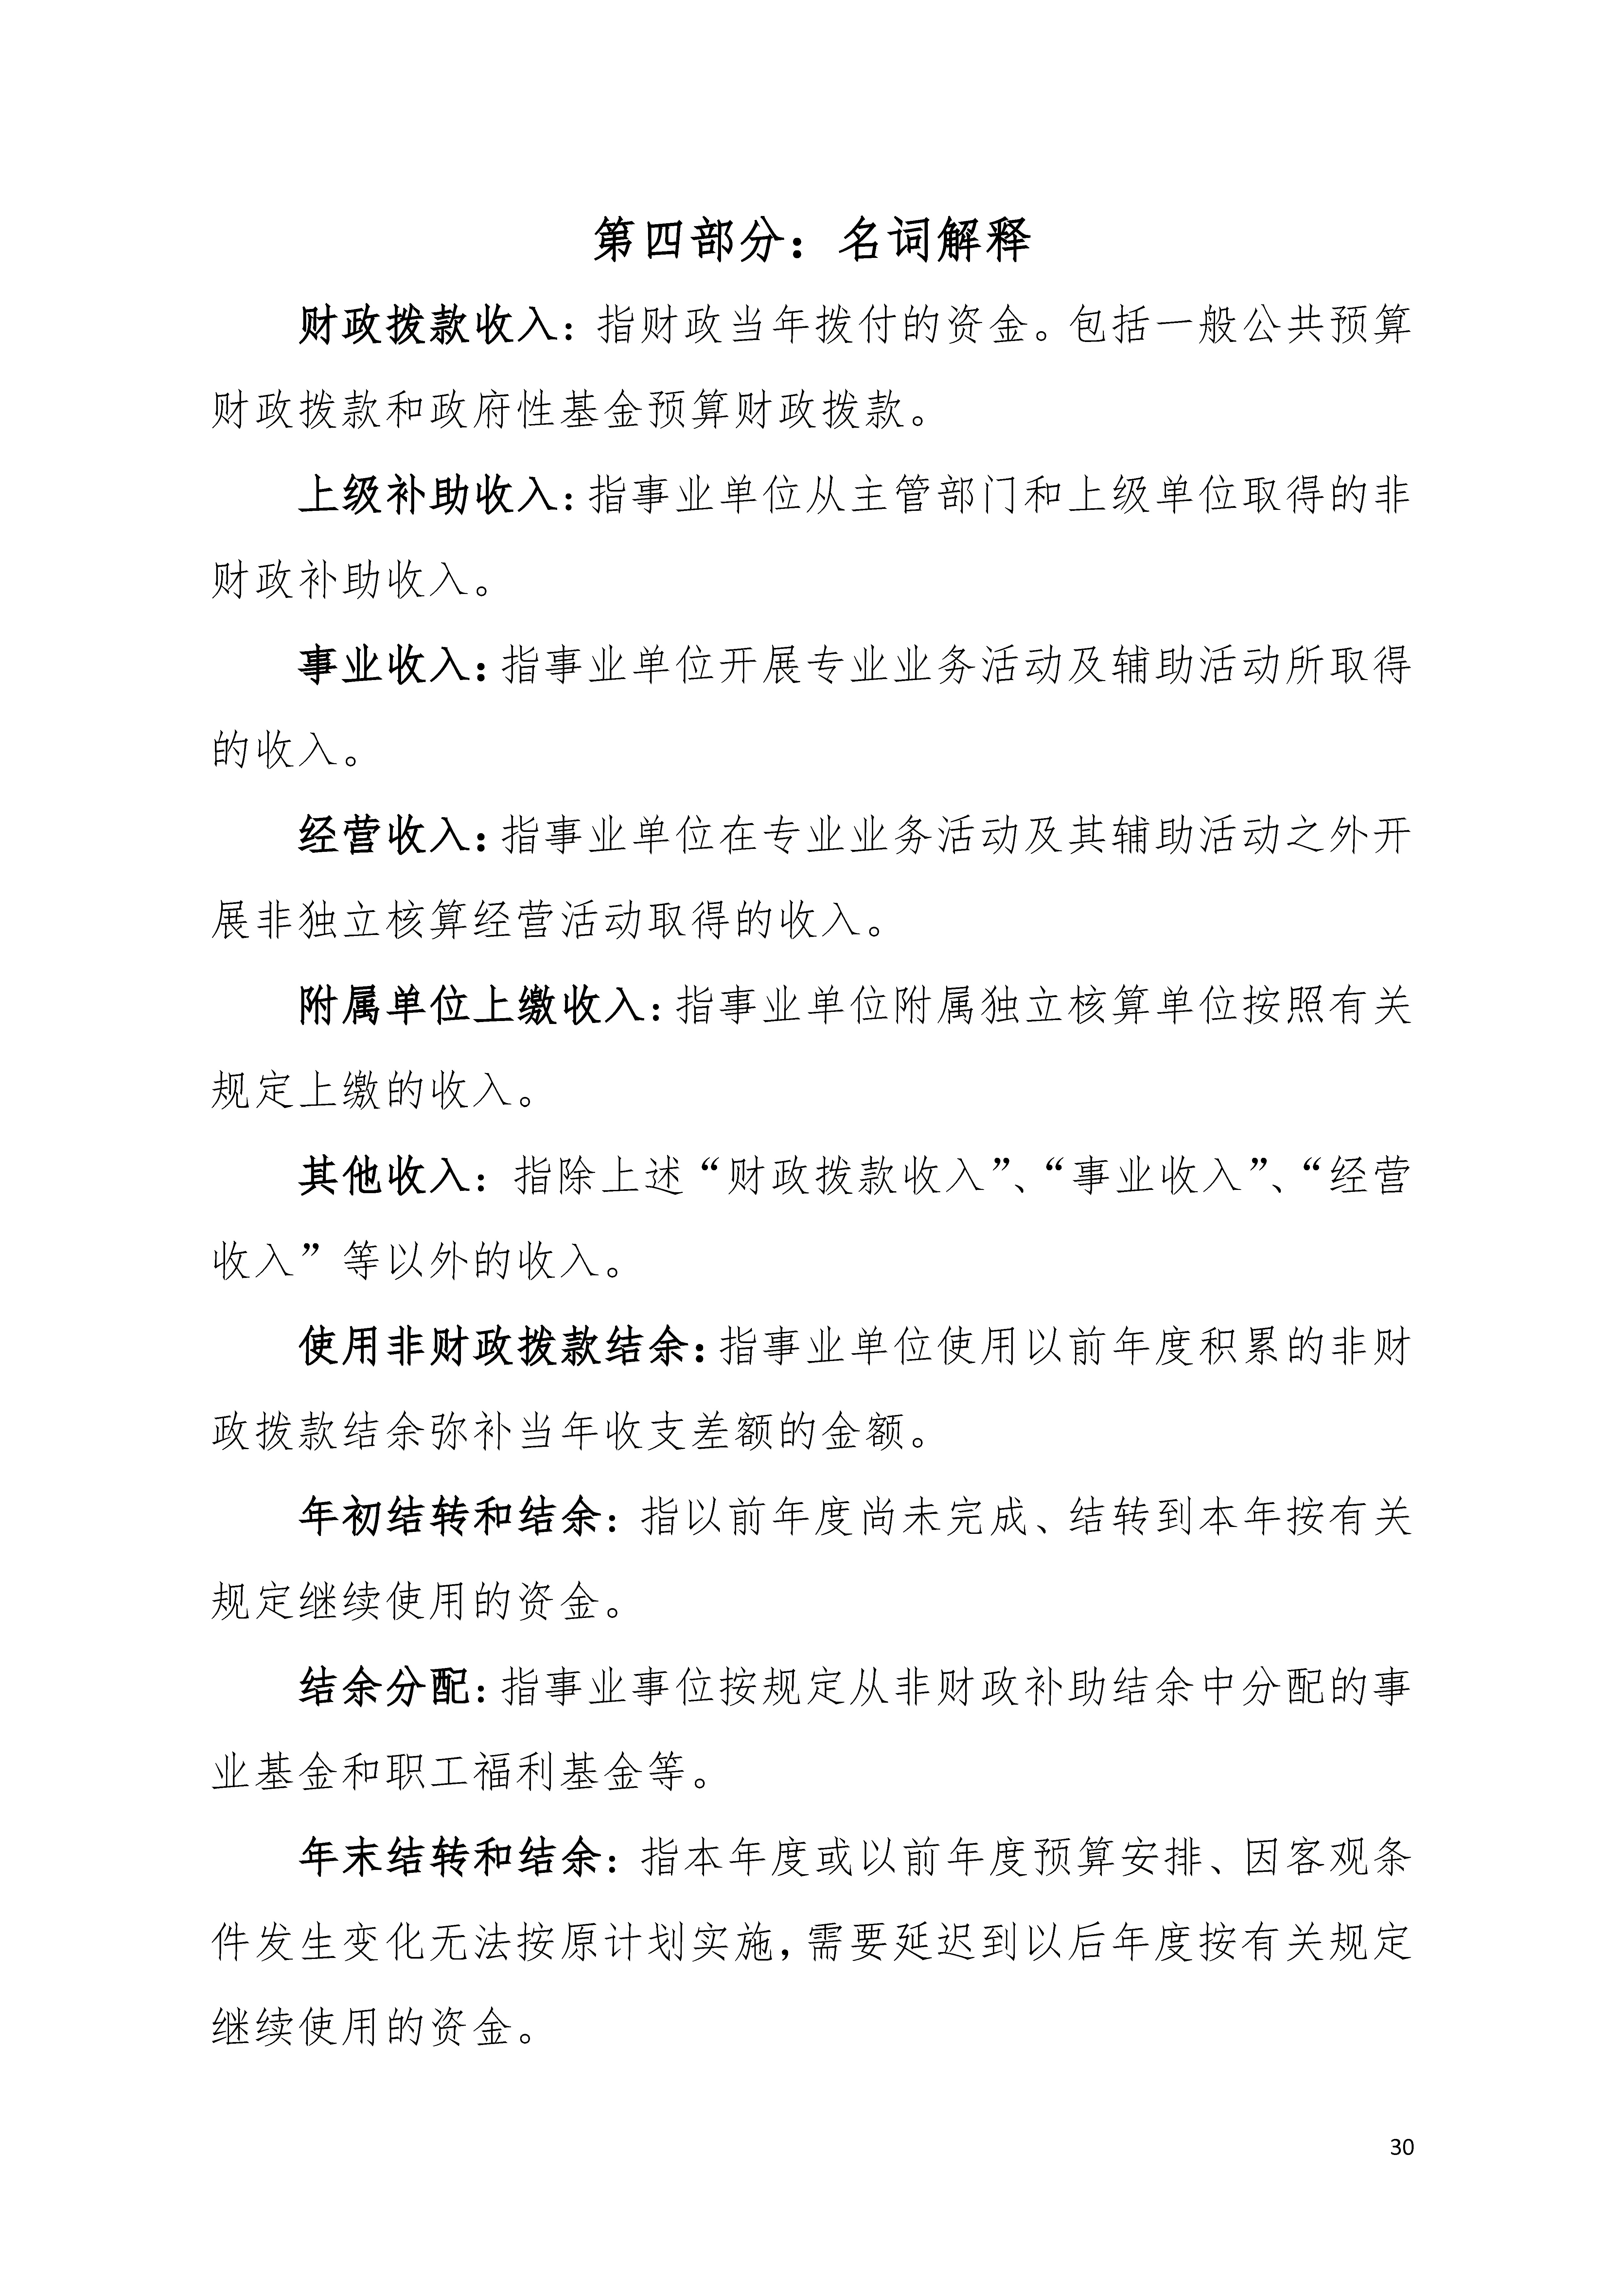 2021年广东省残疾人康复中心部门决算 0629_页面_30.jpg